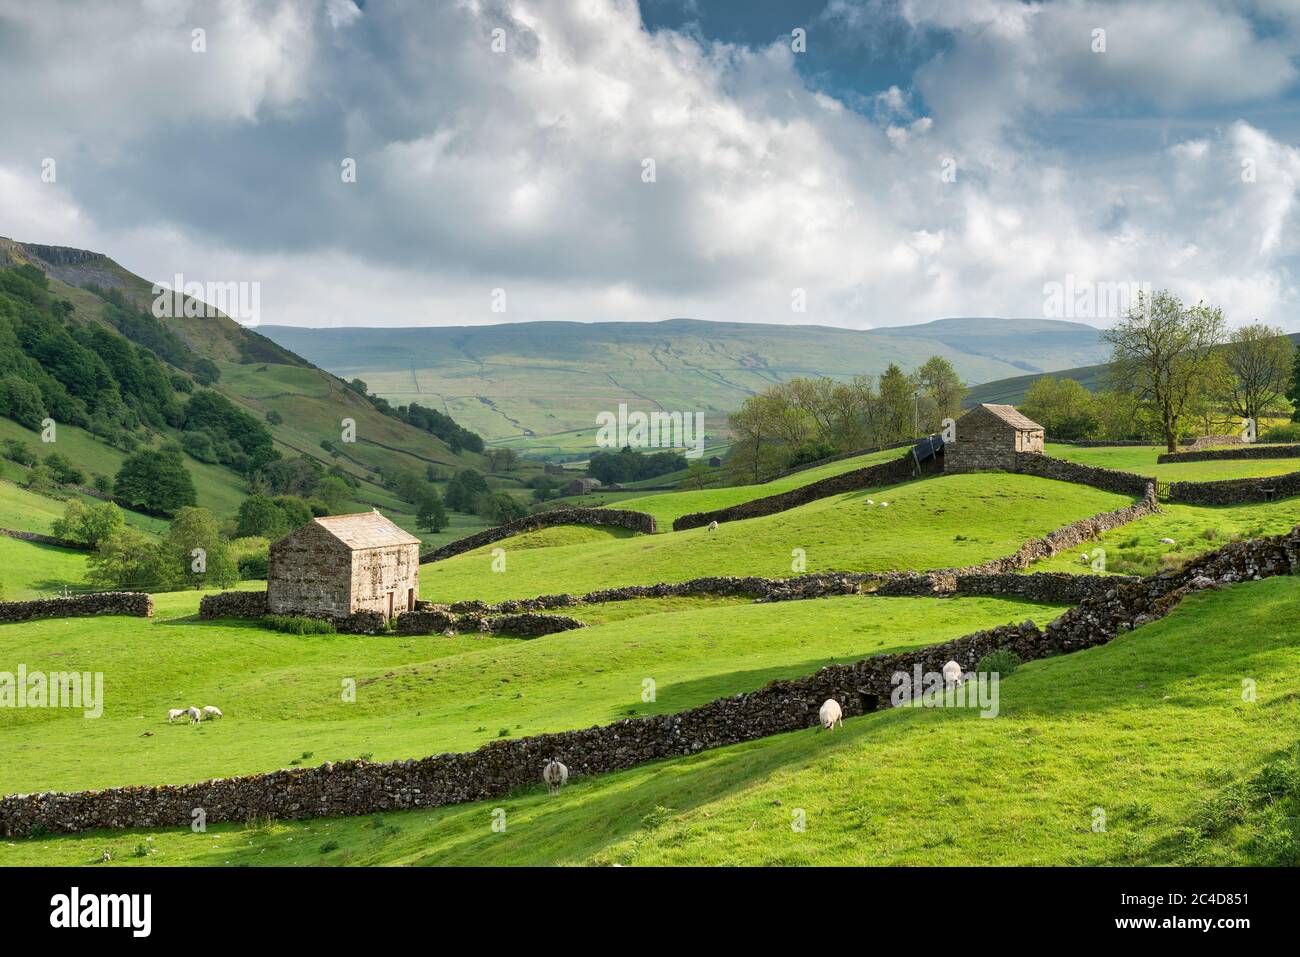 Pascolo di pecore, muri a secco di pietra e fienili tradizionali di dales vicino a Keld in Swaledale, le valli dello Yorkshire, Regno Unito. Foto Stock